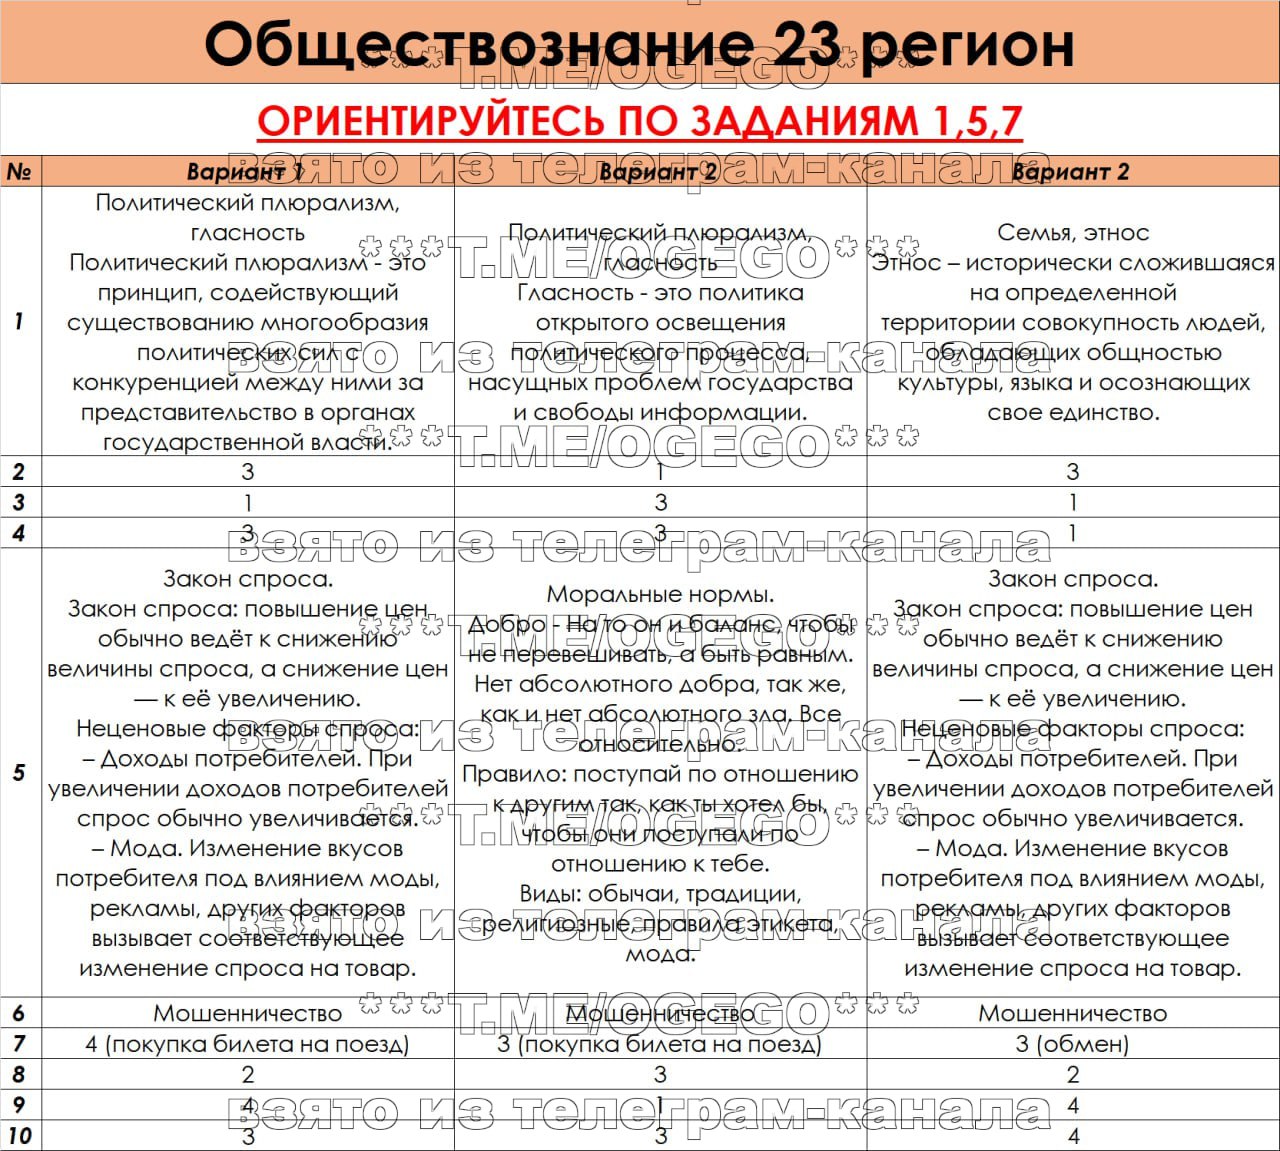 Русский язык огэ ответы телеграмм фото 49